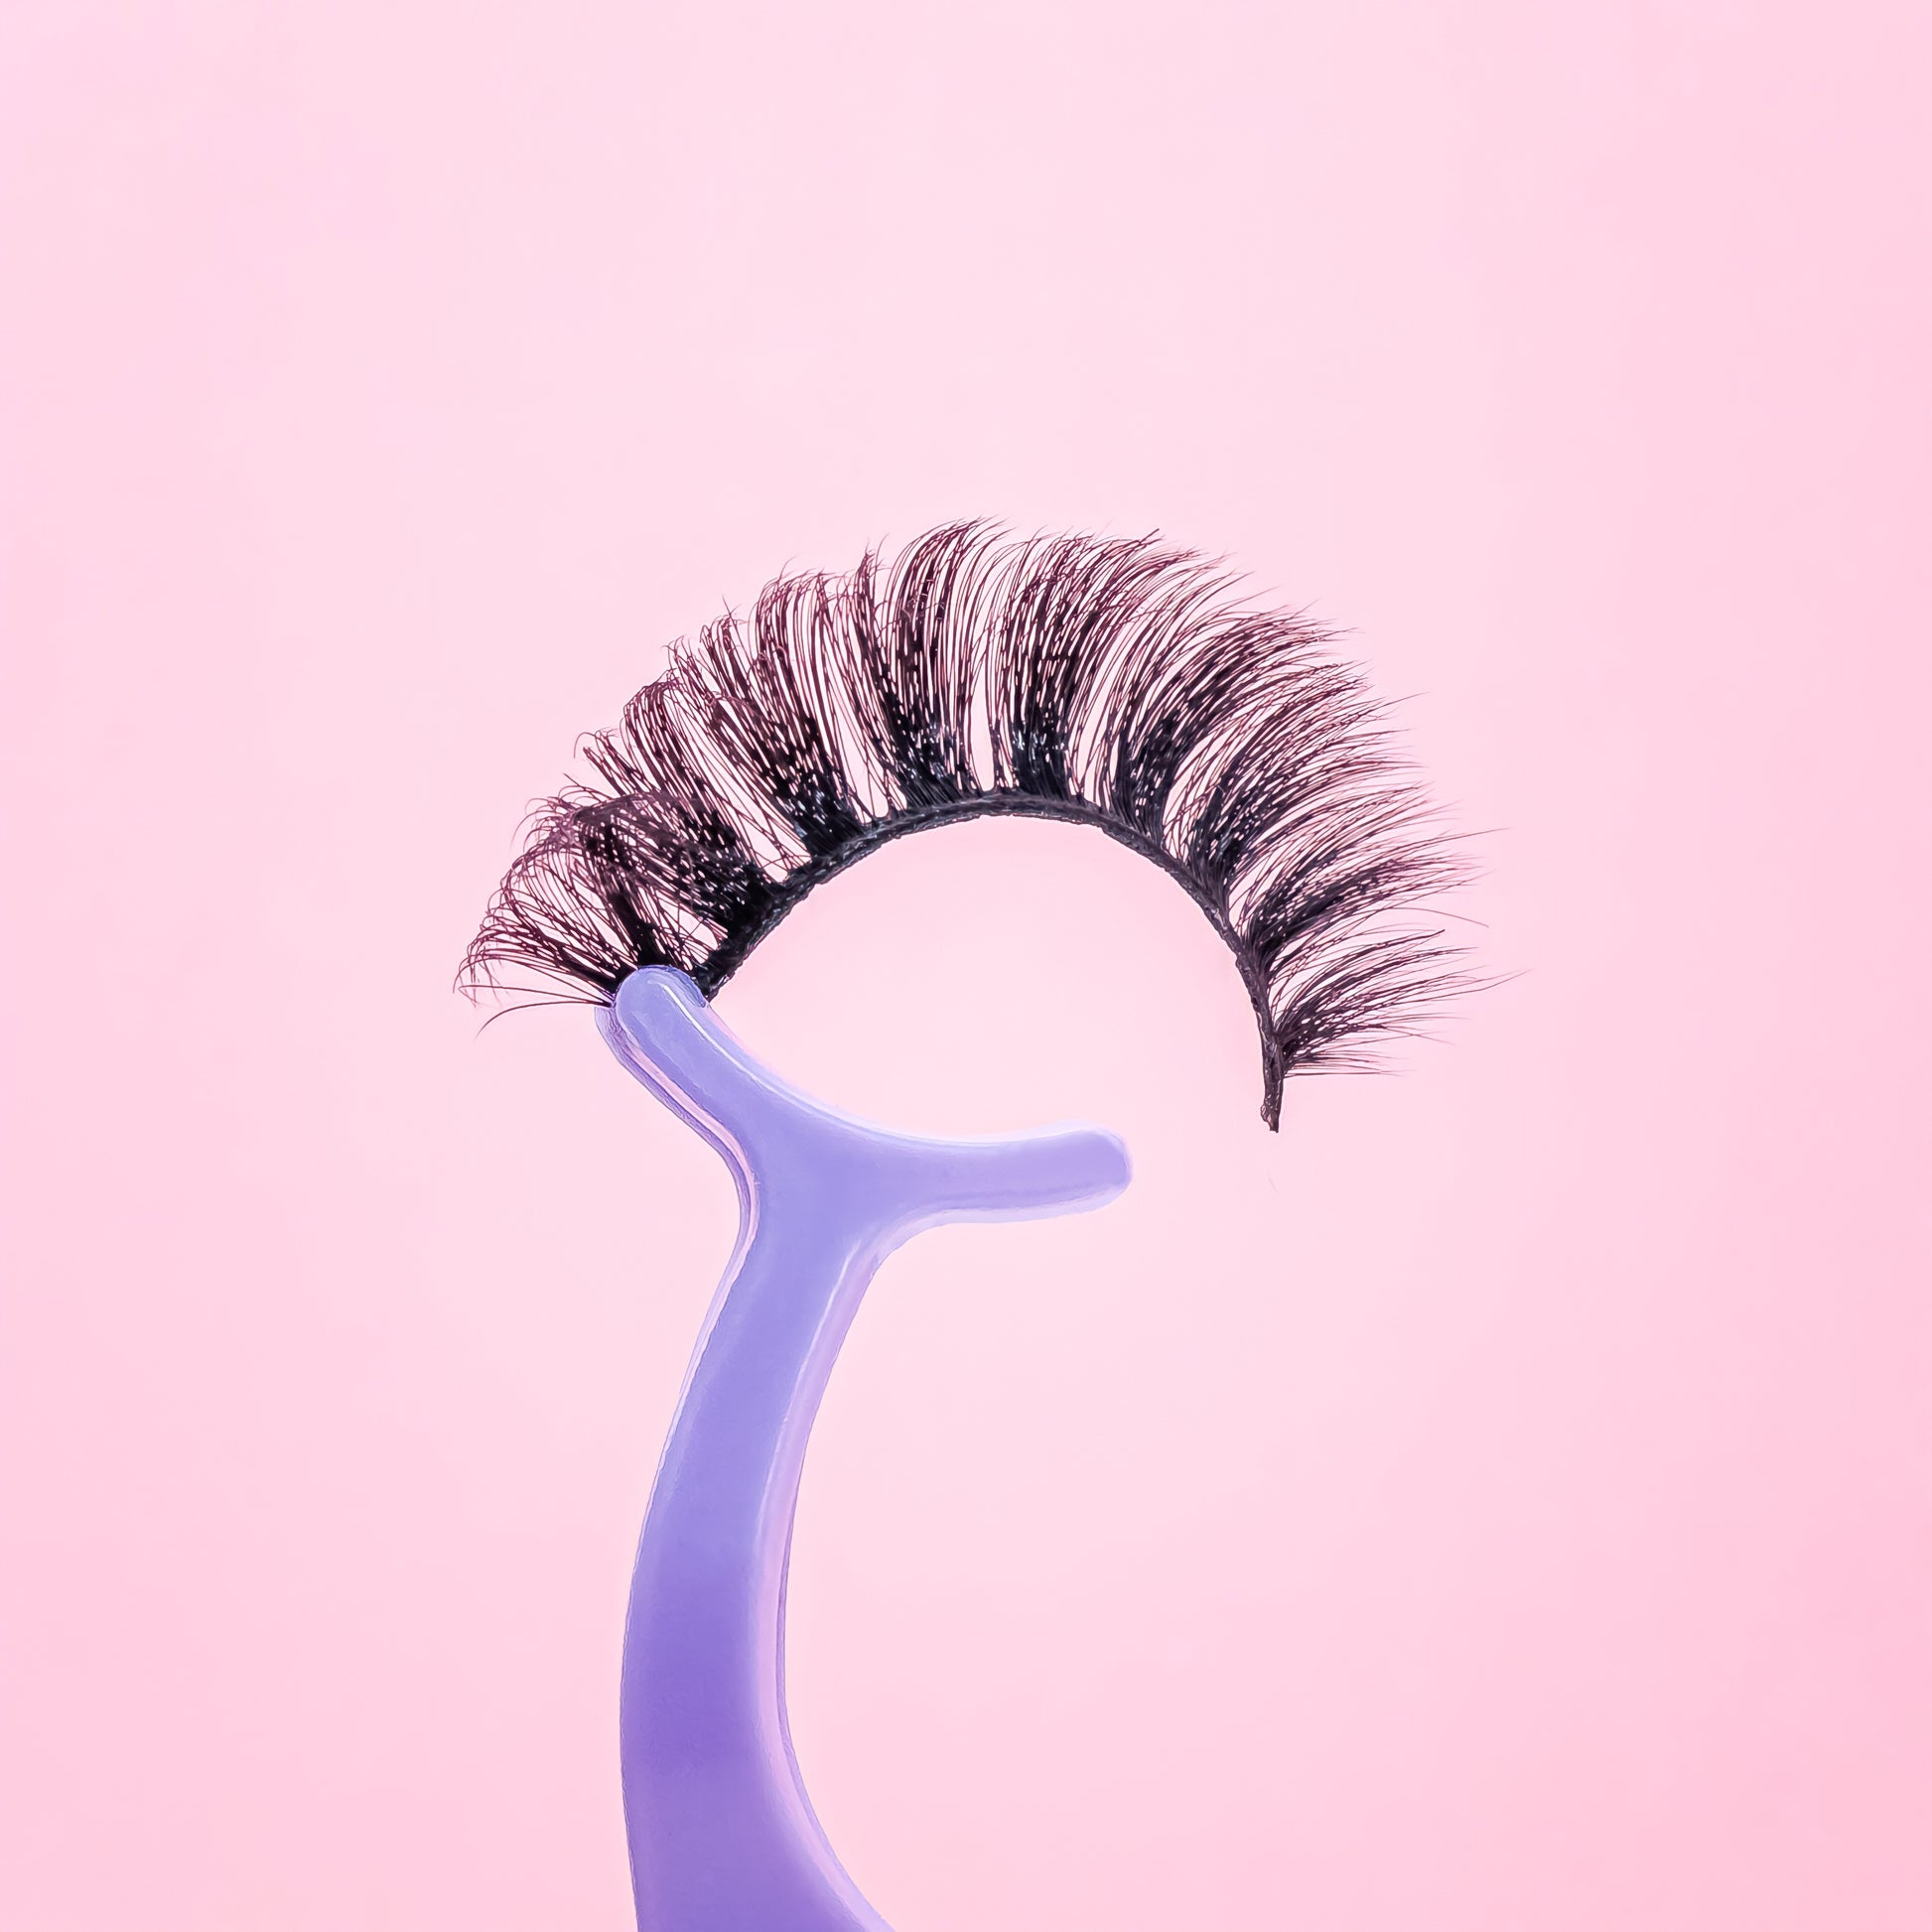 russian d curl long wispy faux mink false eyelashes on purple tweezer. 